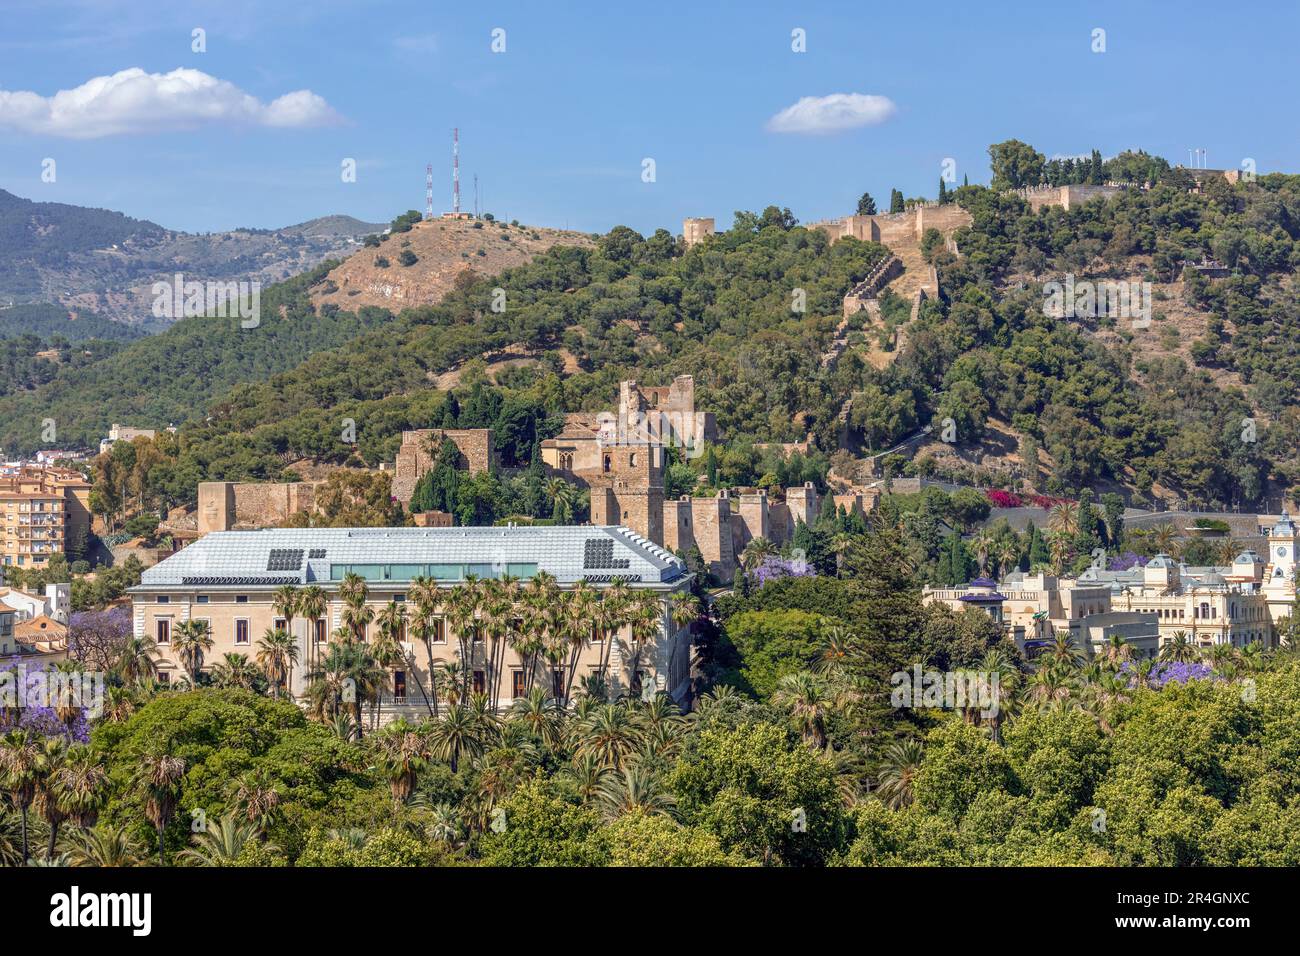 Malaga, Costa del Sol, la province de Malaga, Andalousie, Espagne du sud. Les fortifications maures de Malaga : les murs de l'Alcazaba atteignant jusqu' l'hil Banque D'Images